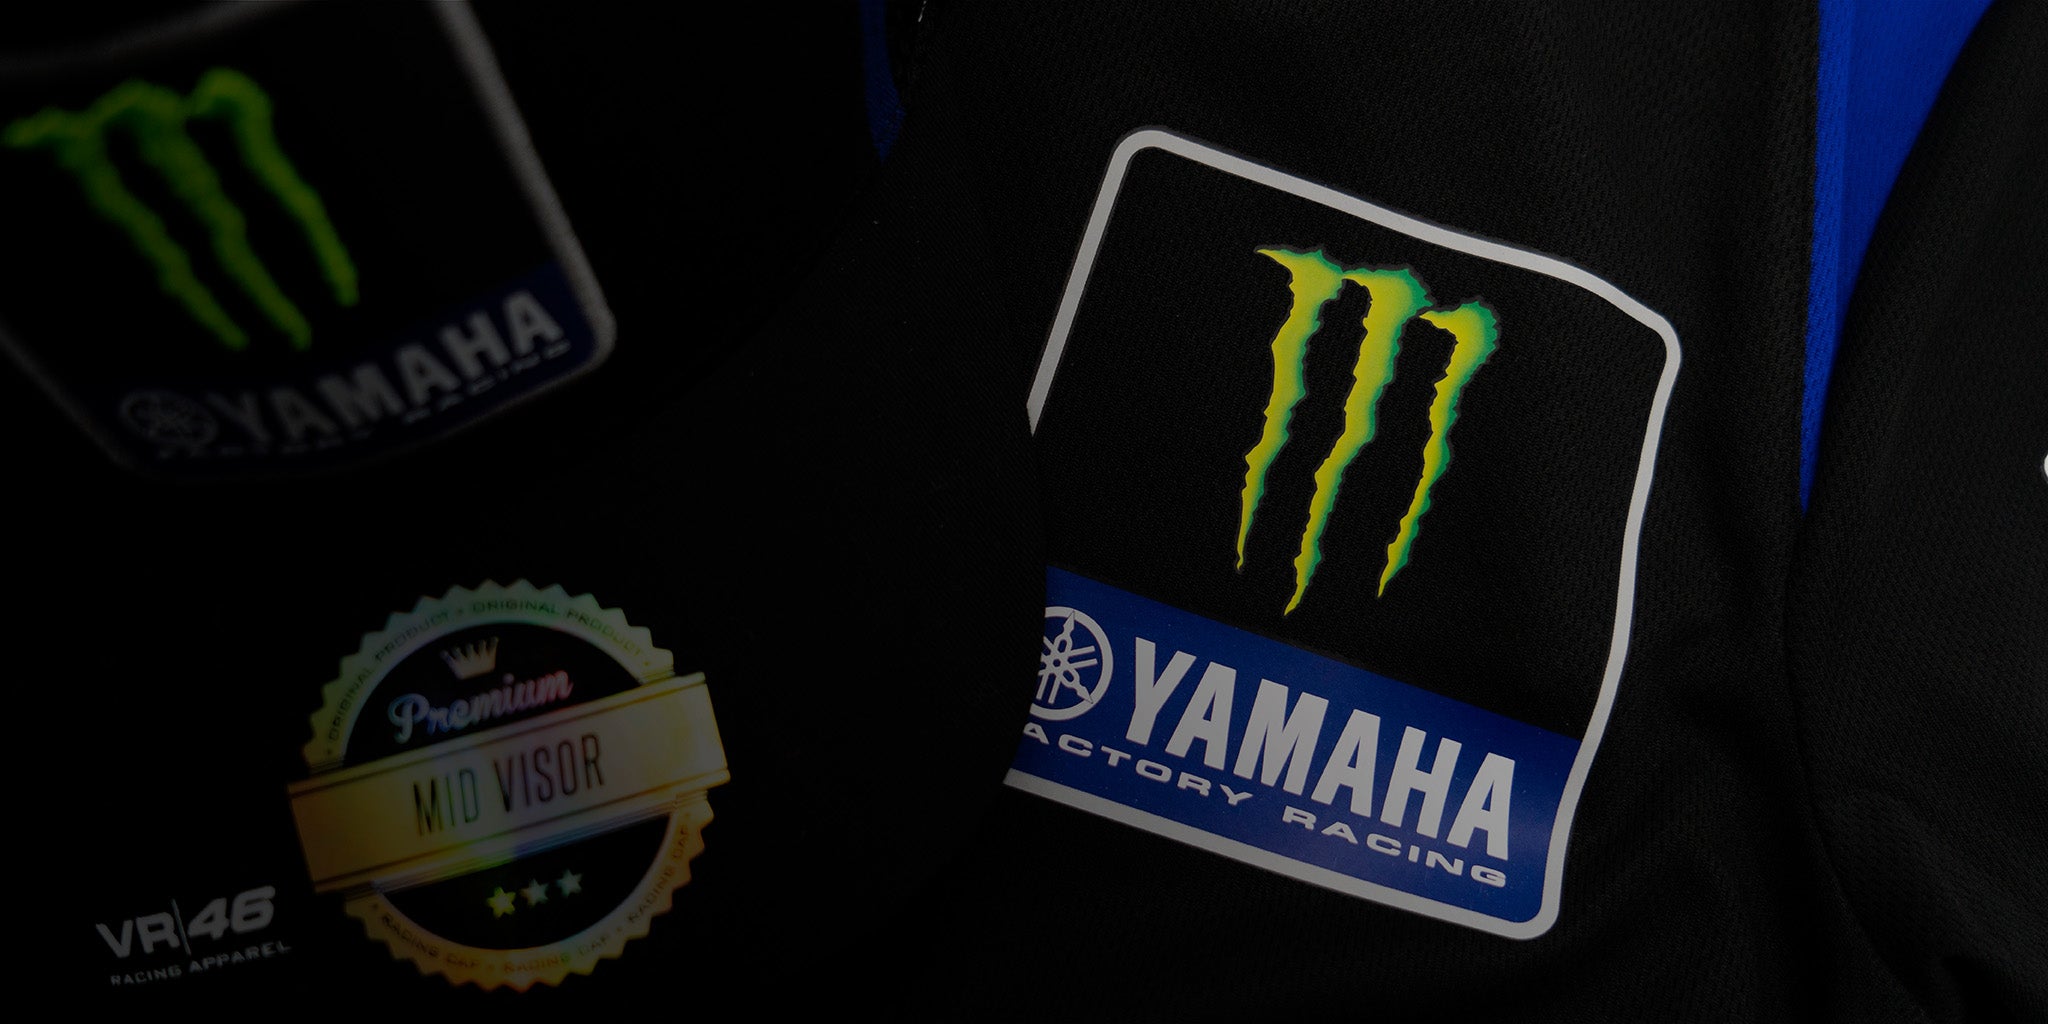 Yamaha T-Shirt Tenere Bianca - Calamari Racing Shop